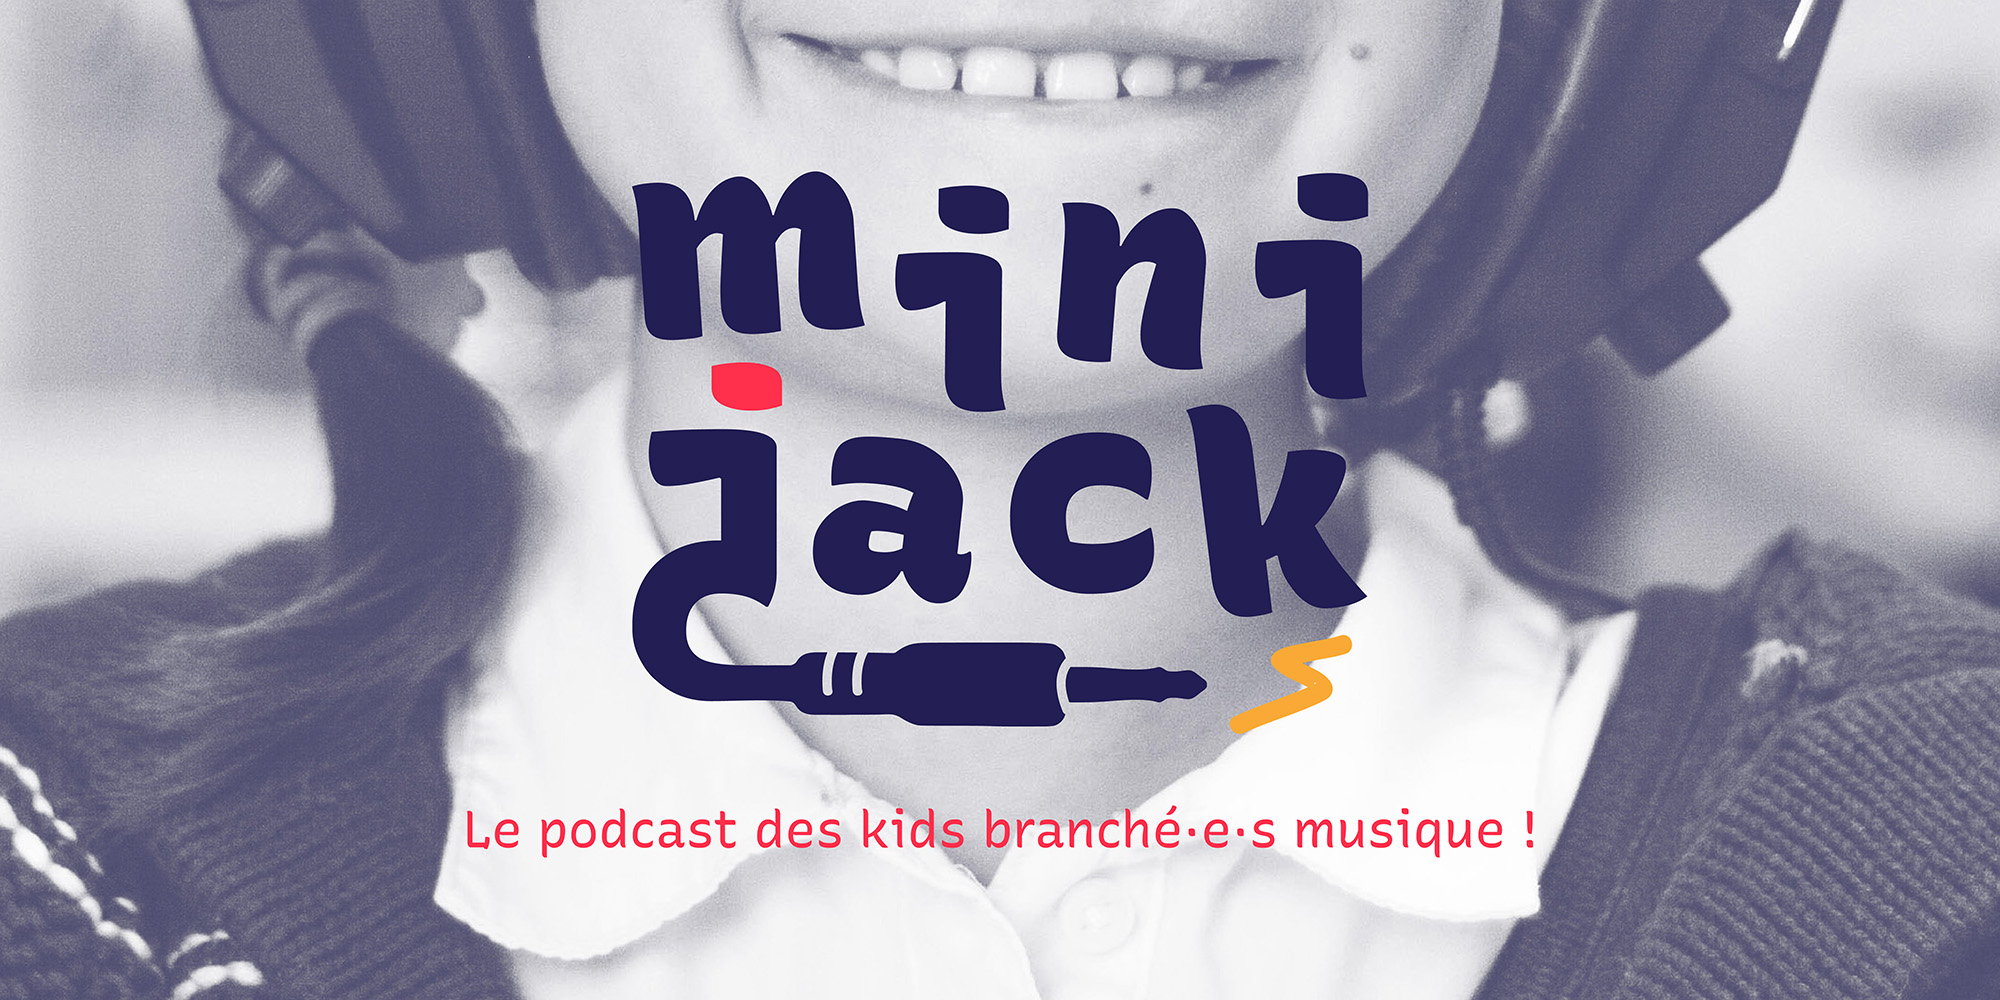 Bannière de pub du podcast fictif Mini Jack avec sa baseline "Le podcast des kids branché·e·s musique !"